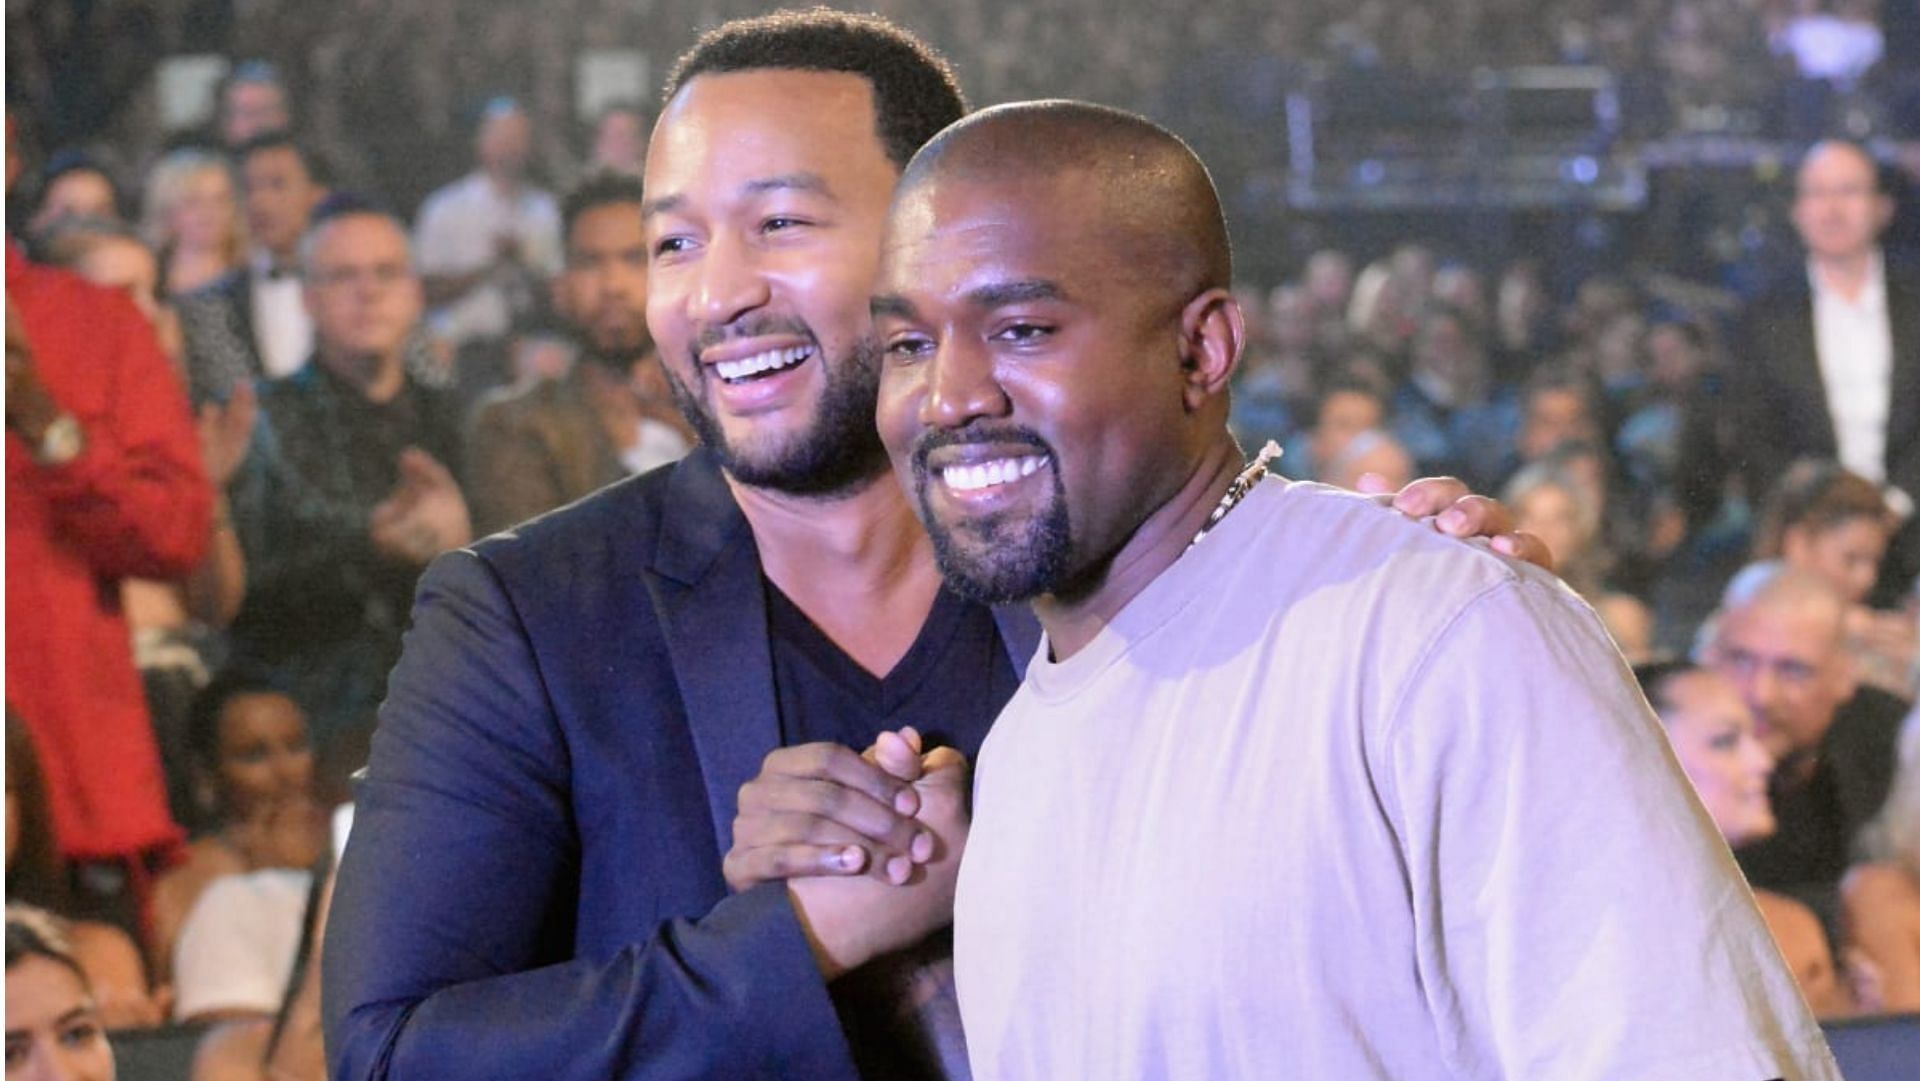 John Legend and Kanye West. (Image via Jeff Kravitz/Getty Images)